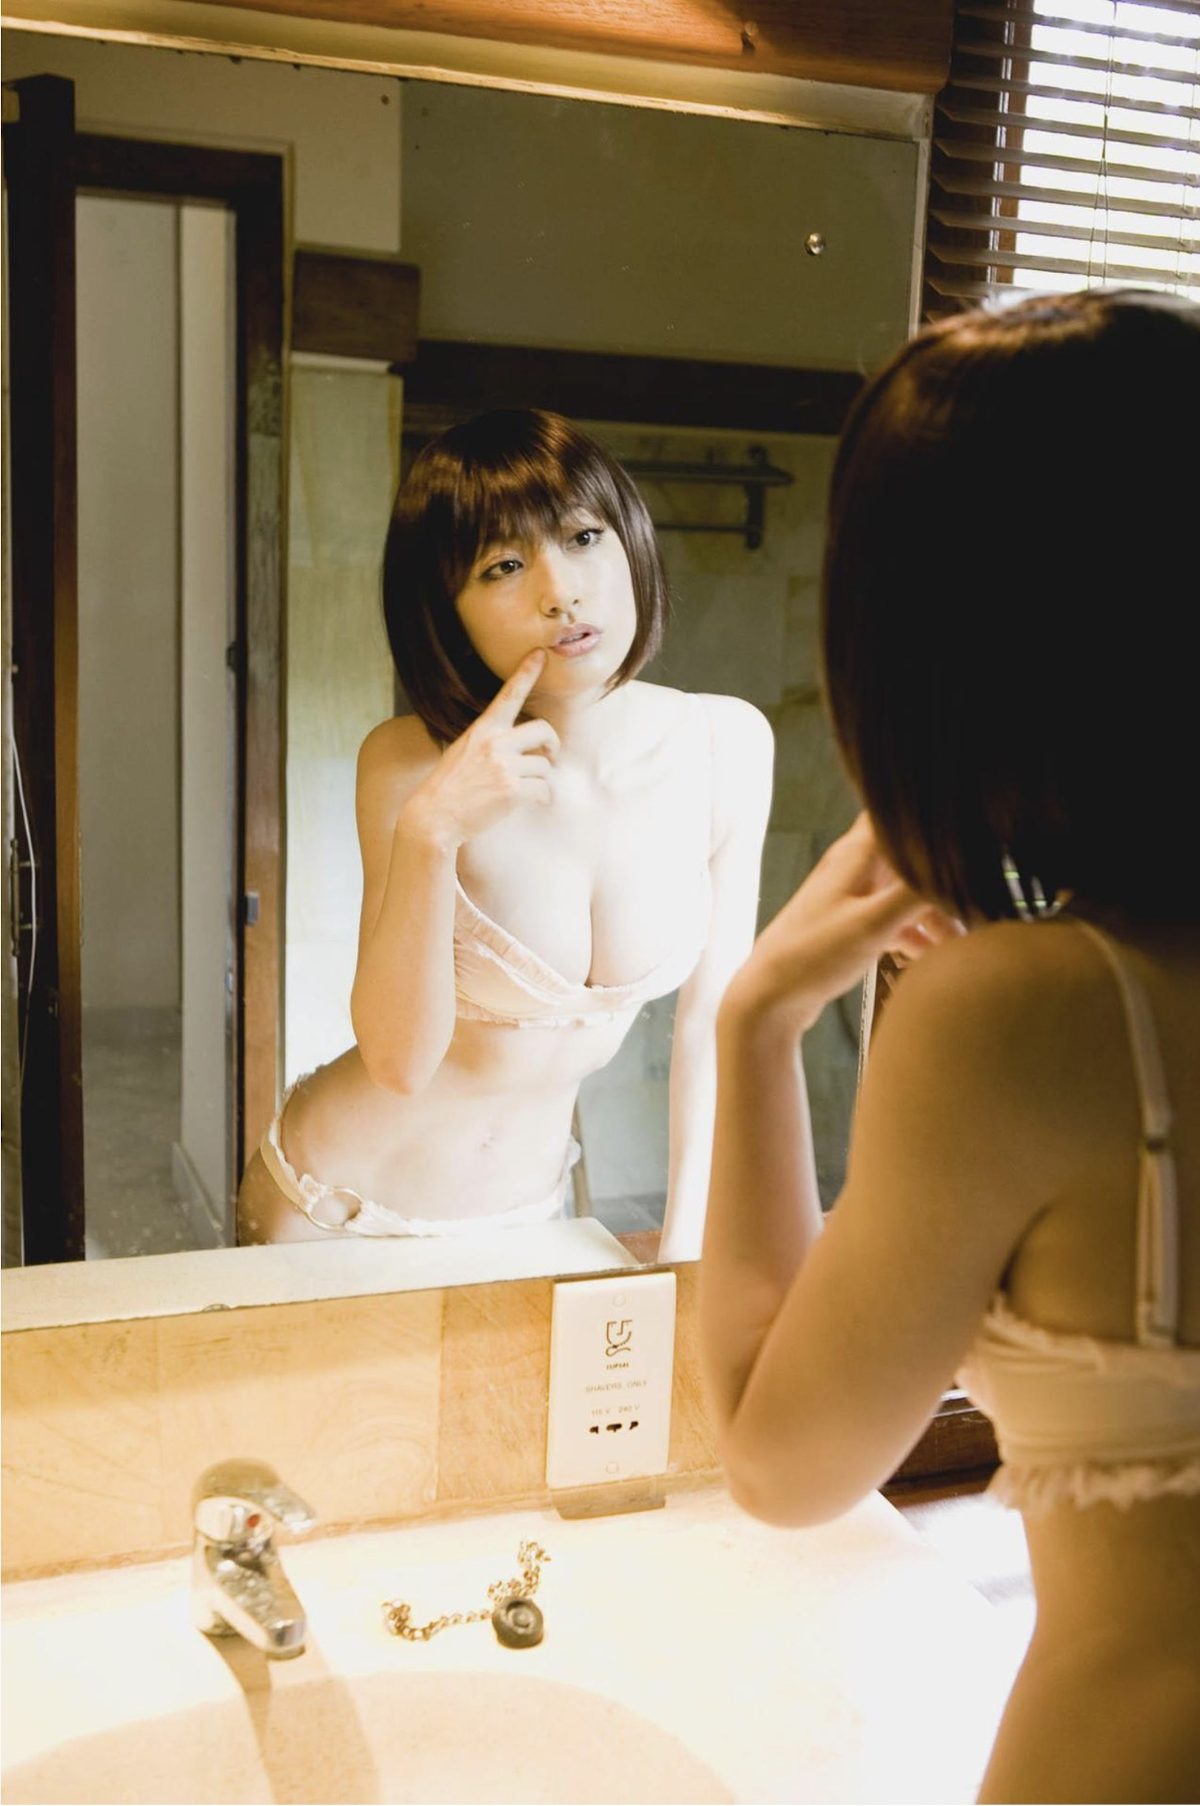 Asian Pretty Girl Yoko Kumada 熊田曜子 Dignity 0040 4647208600.jpg